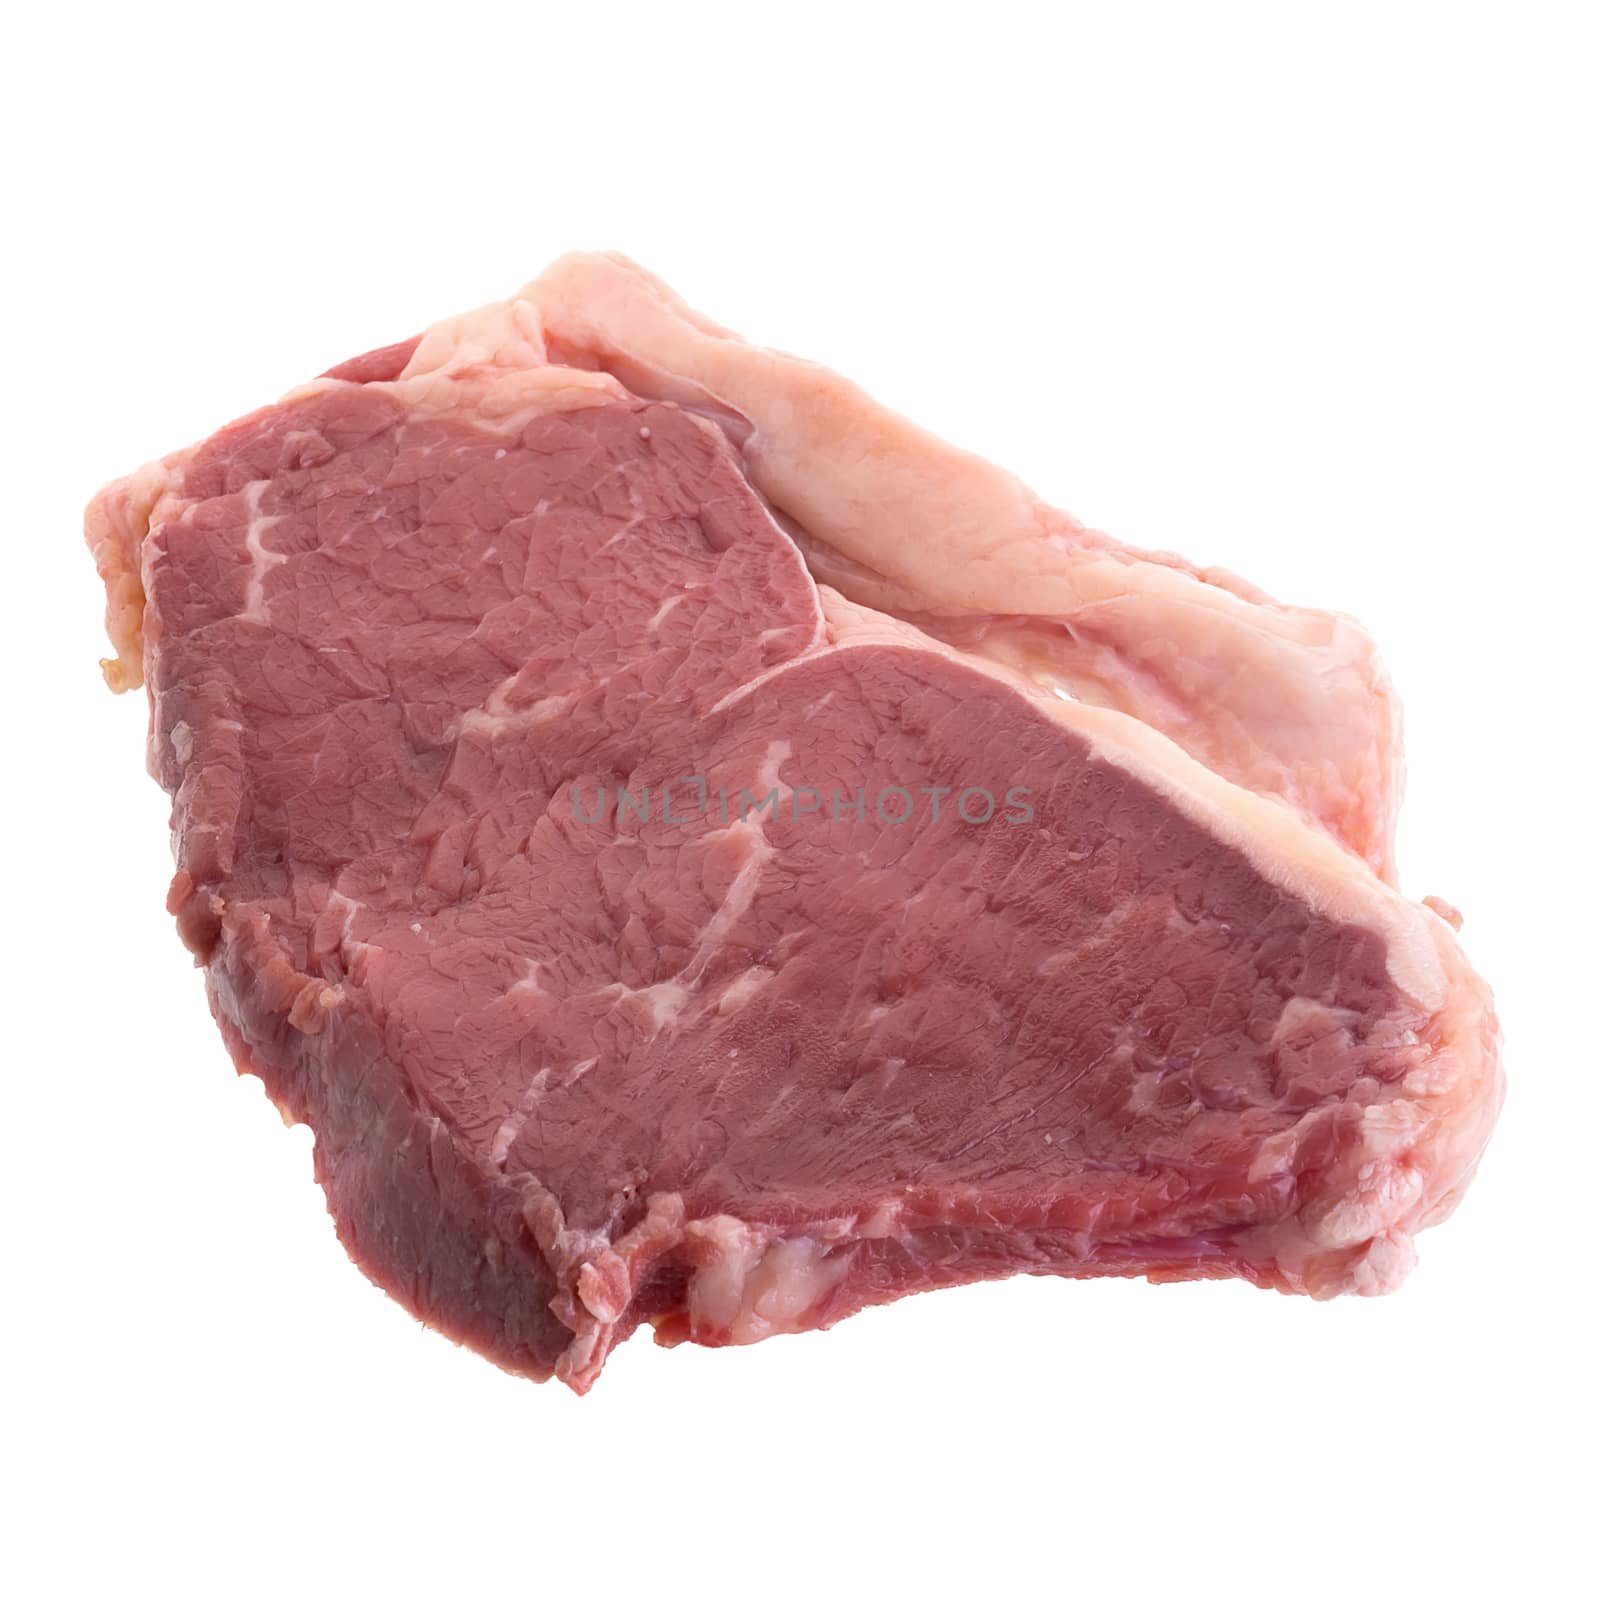 Raw fresh beef steaks, fresh sirloin steaks.